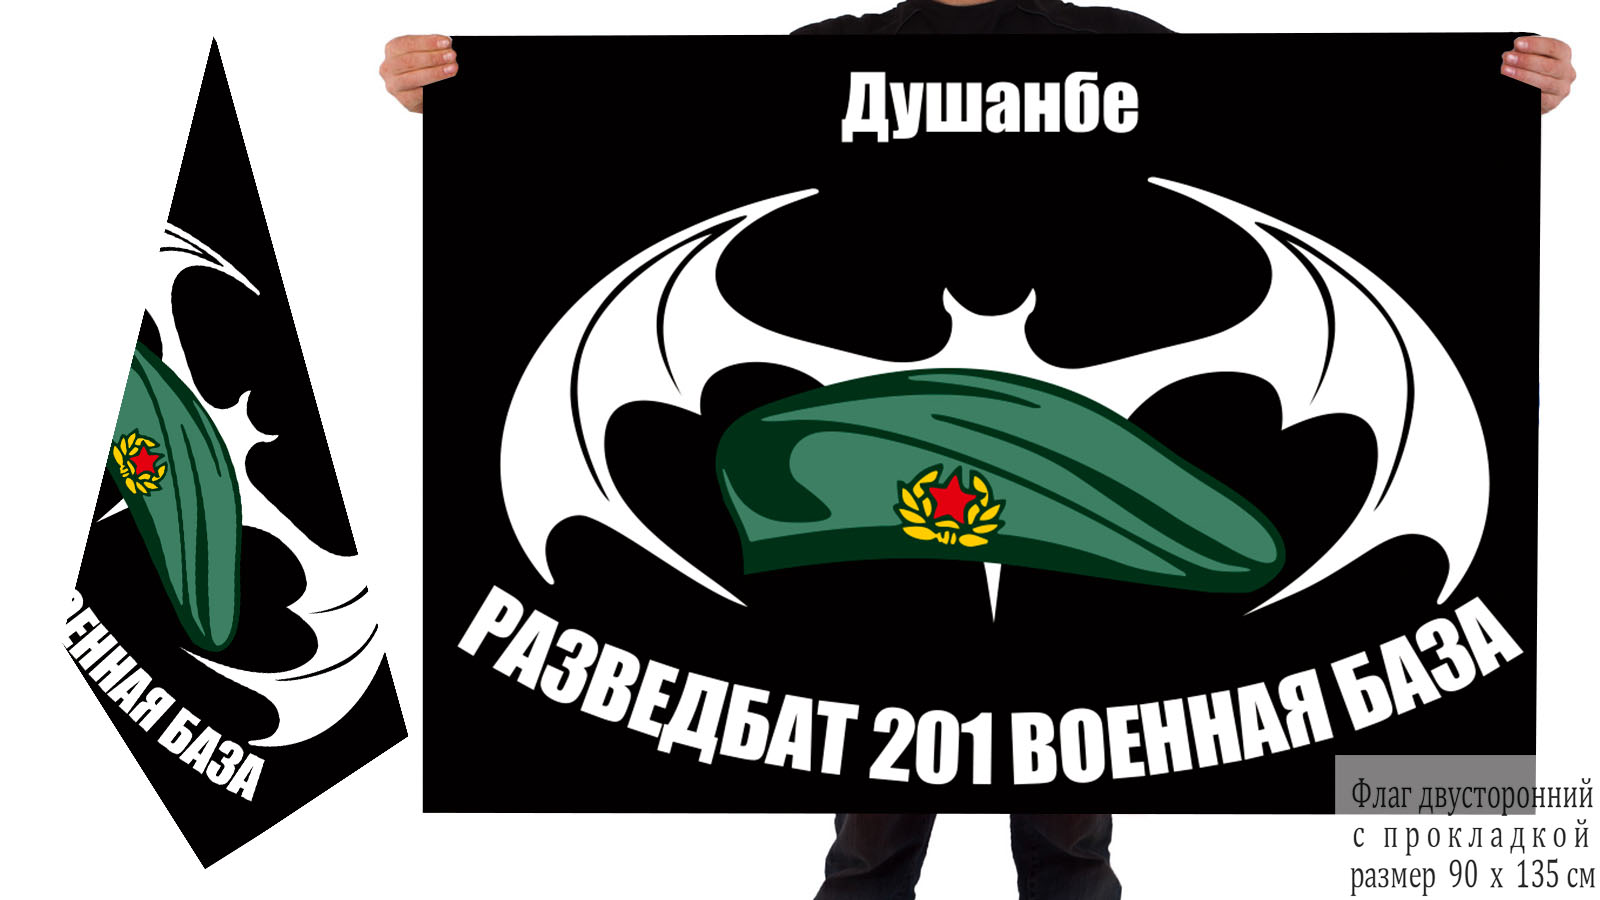  Двусторонний флаг Разведбата 201 российской военной базы